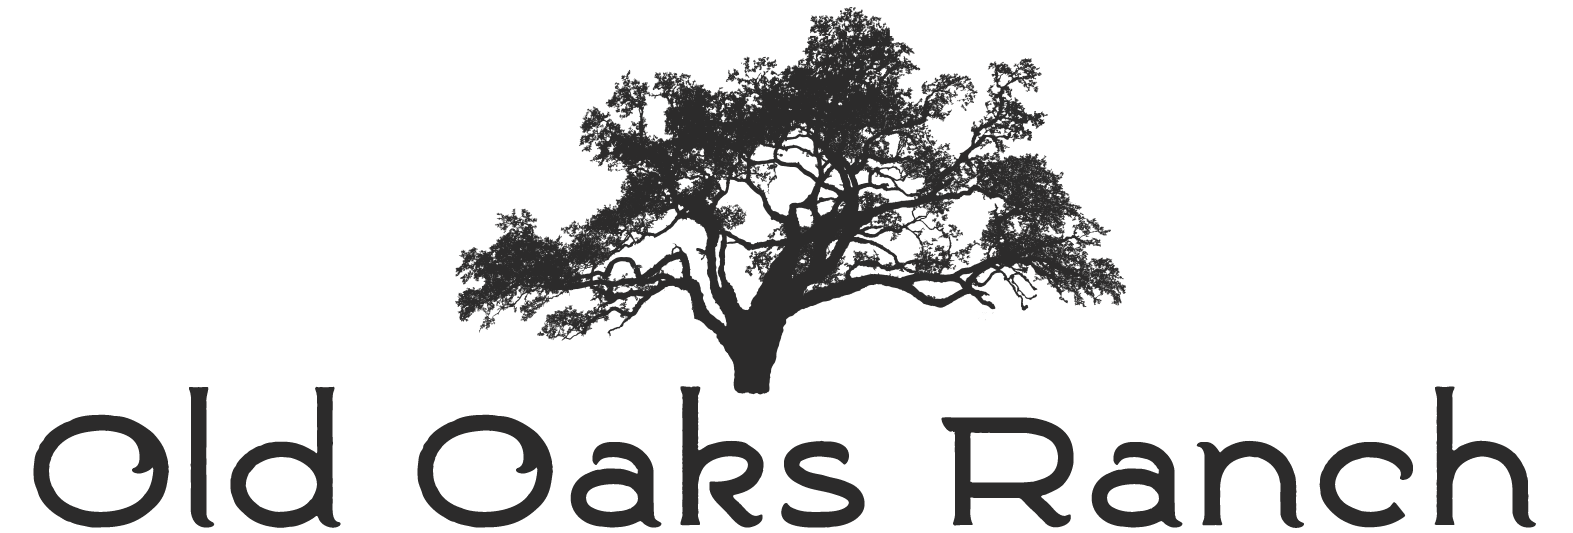 Old Oaks Ranch